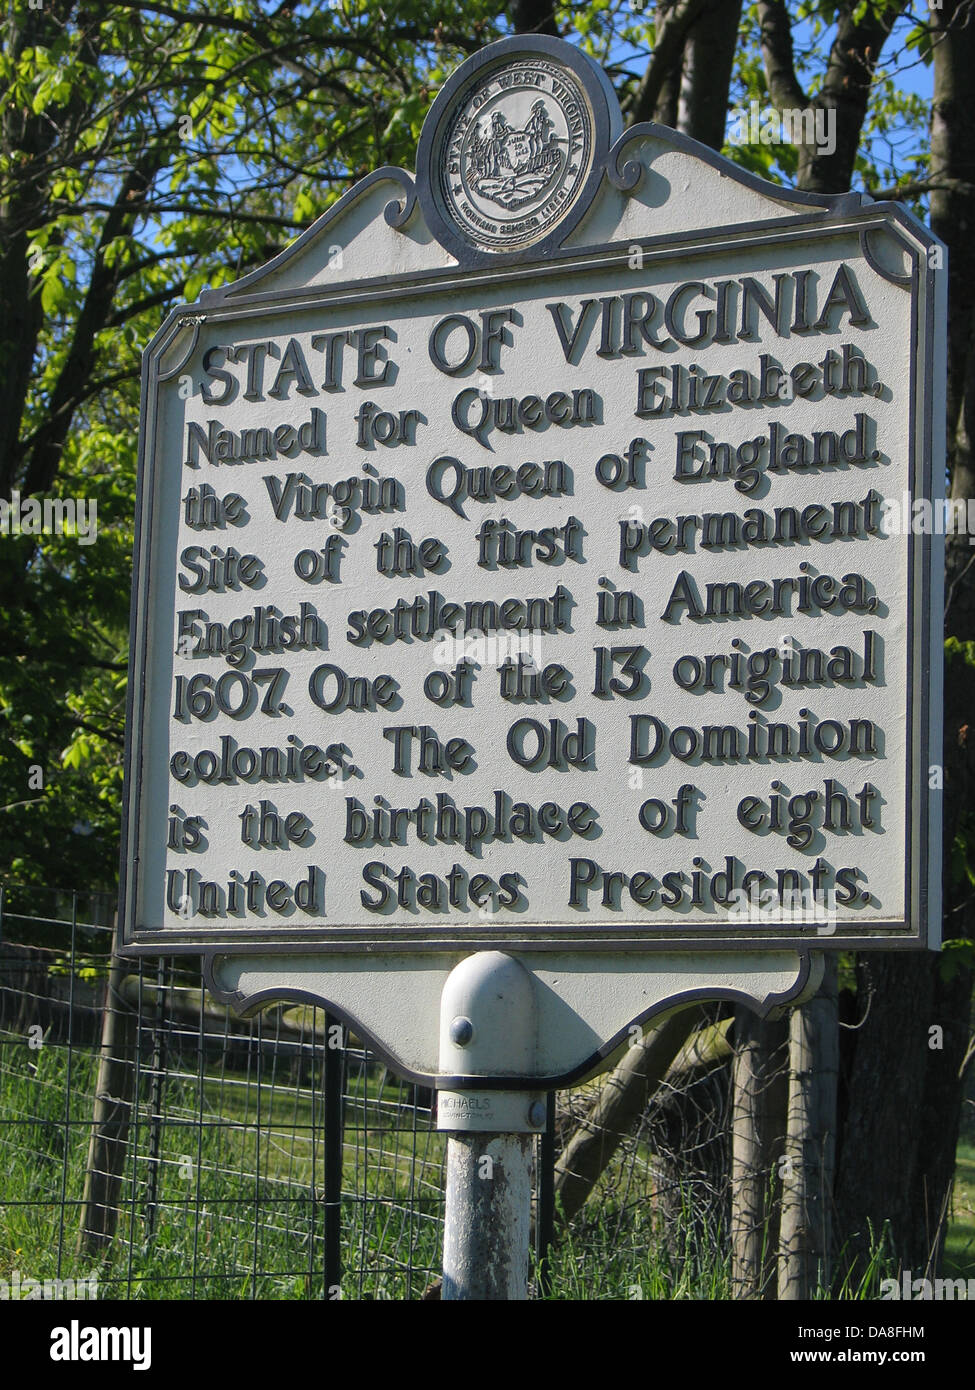 US-Bundesstaat VIRGINIA, benannt nach Königin Elizabeth, die jungfräuliche Königin von England. Website von die erste dauerhafte englische Siedlung in Amerika, 1607. Eines der 13 ursprünglichen Kolonien. Old Dominion ist der Geburtsort von acht US-Präsidenten. Stockfoto